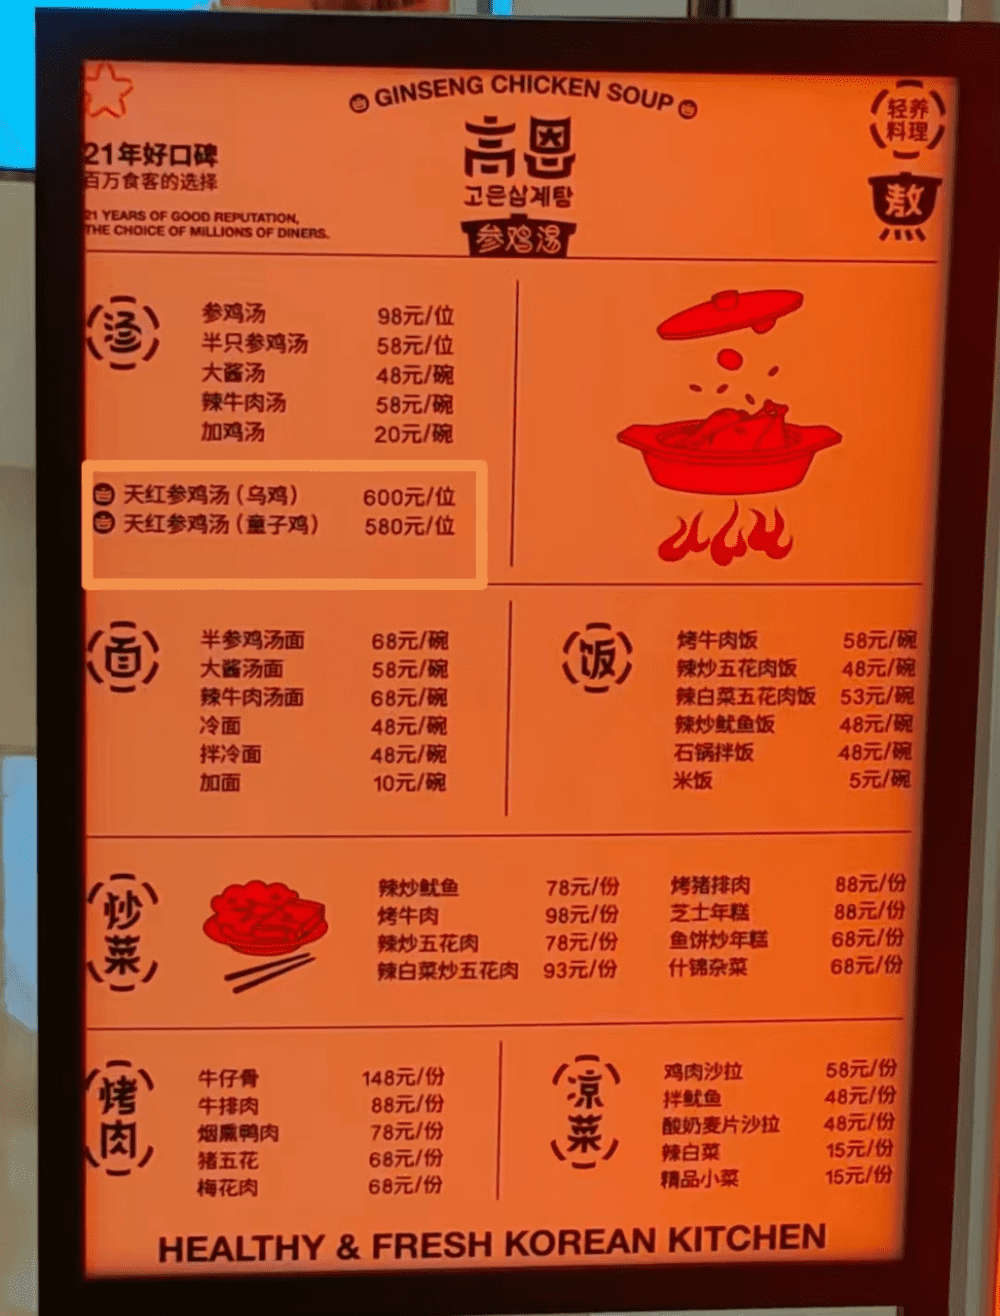 图/普通参鸡汤98元/58元（半只鸡），而天红参鸡汤600元（单人份）